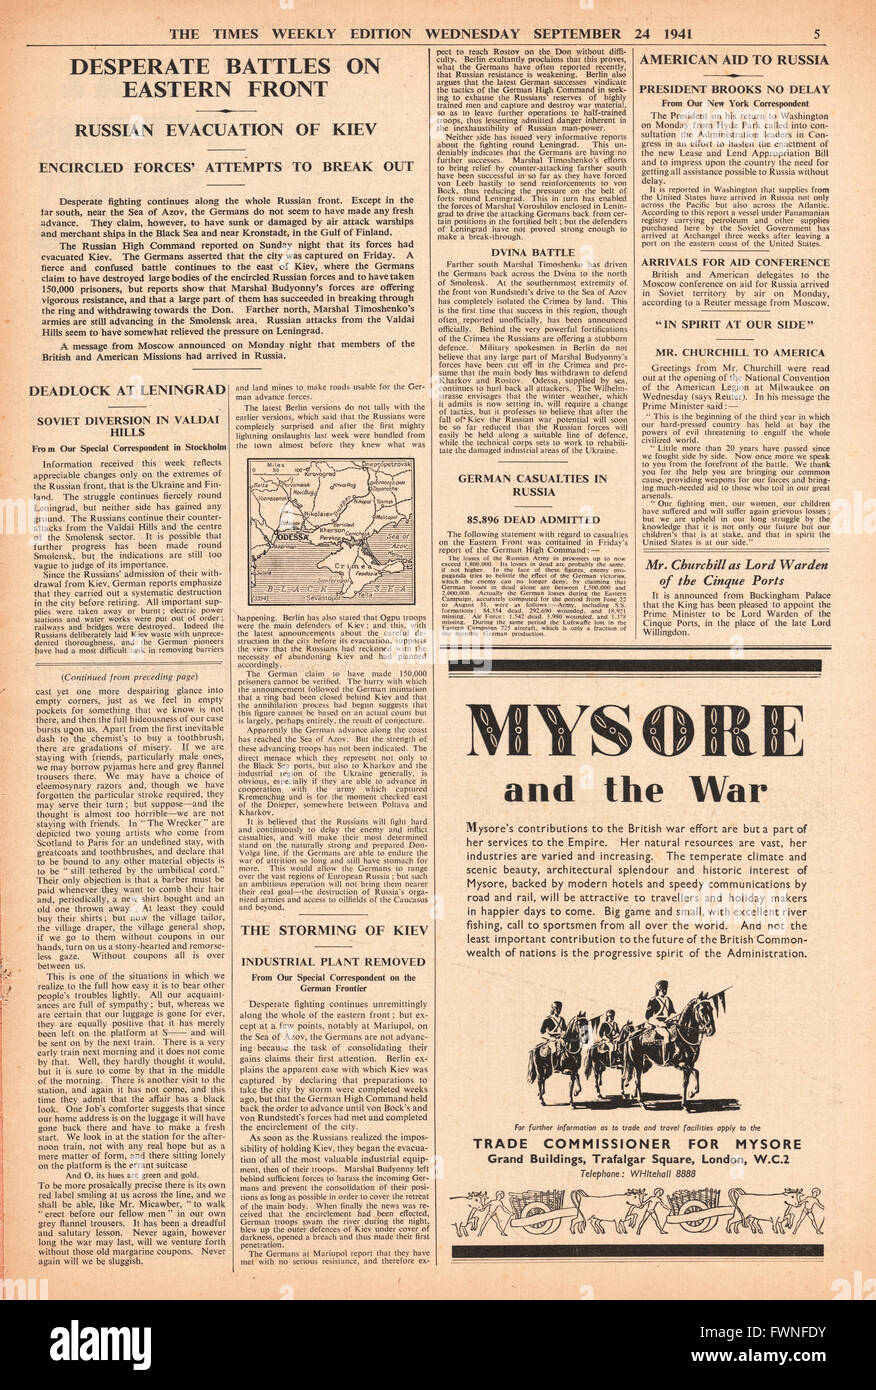 1941, Seite 5 The mal wöchentliche Ausgabe verzweifelten Schlachten an Ostfront Stockfoto